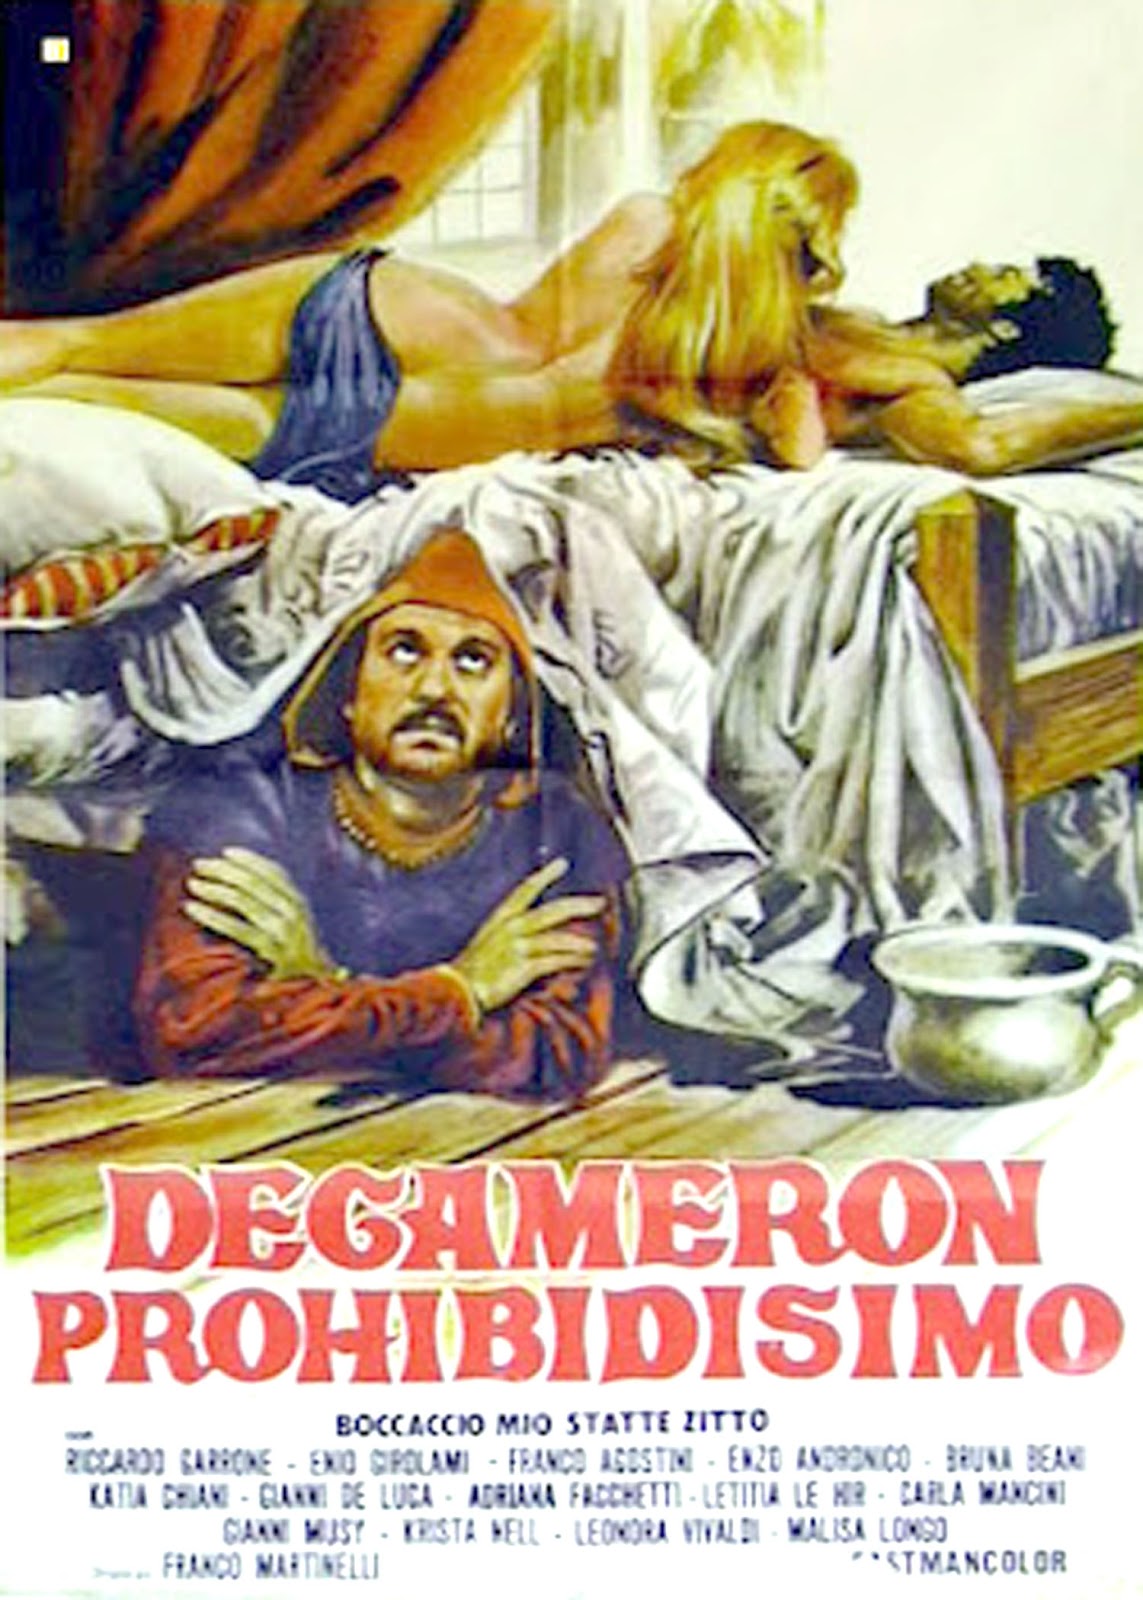 Decameron Proibitissimo (Boccaccio Mio Statte Zitto) [1972]